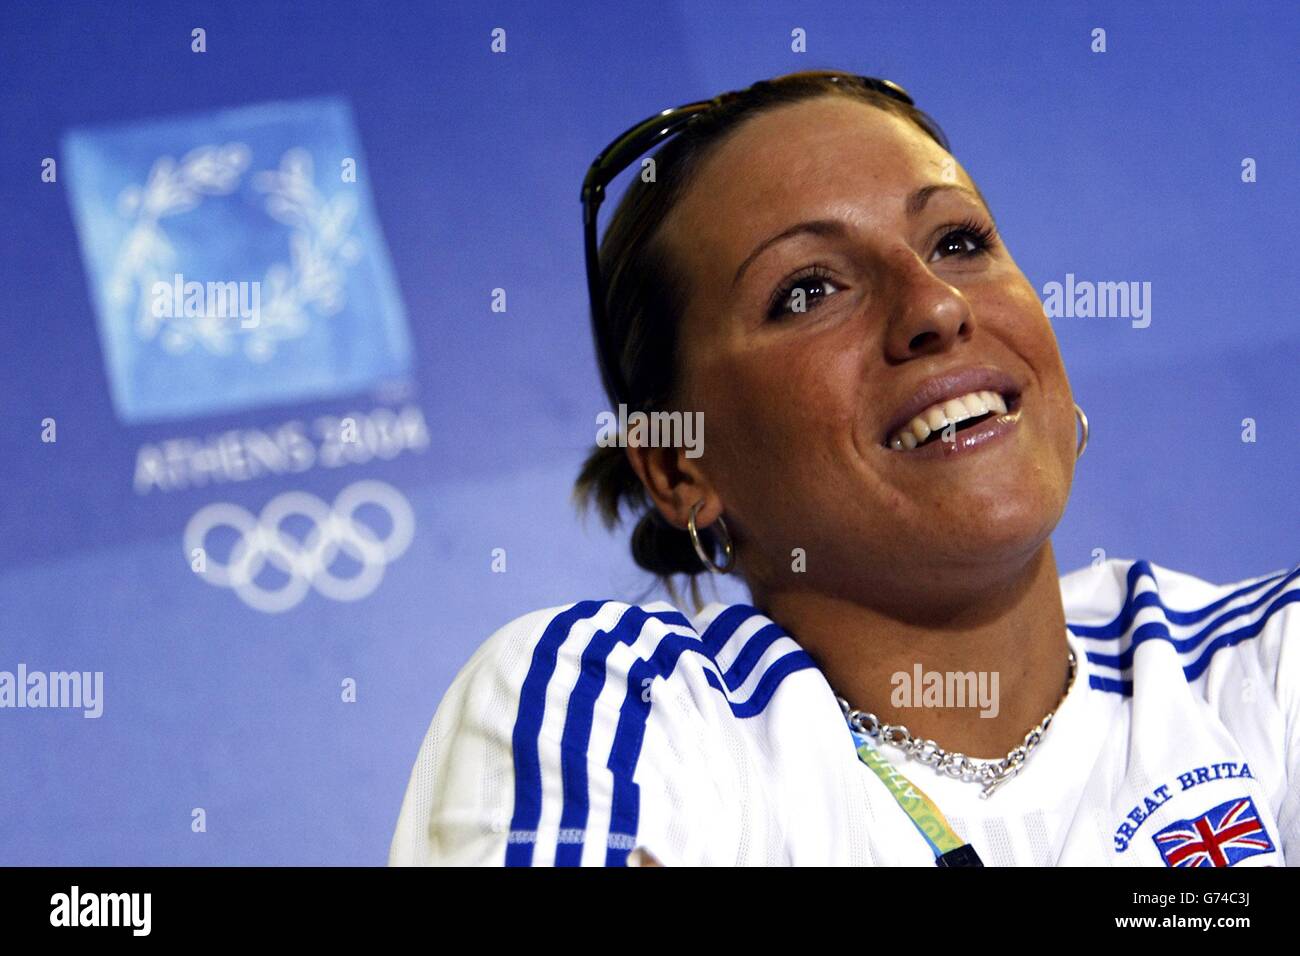 Nuotatore britannico Sarah Price da Loughborough al Centro Acquatico Olimpico di Atene, Grecia. Foto Stock